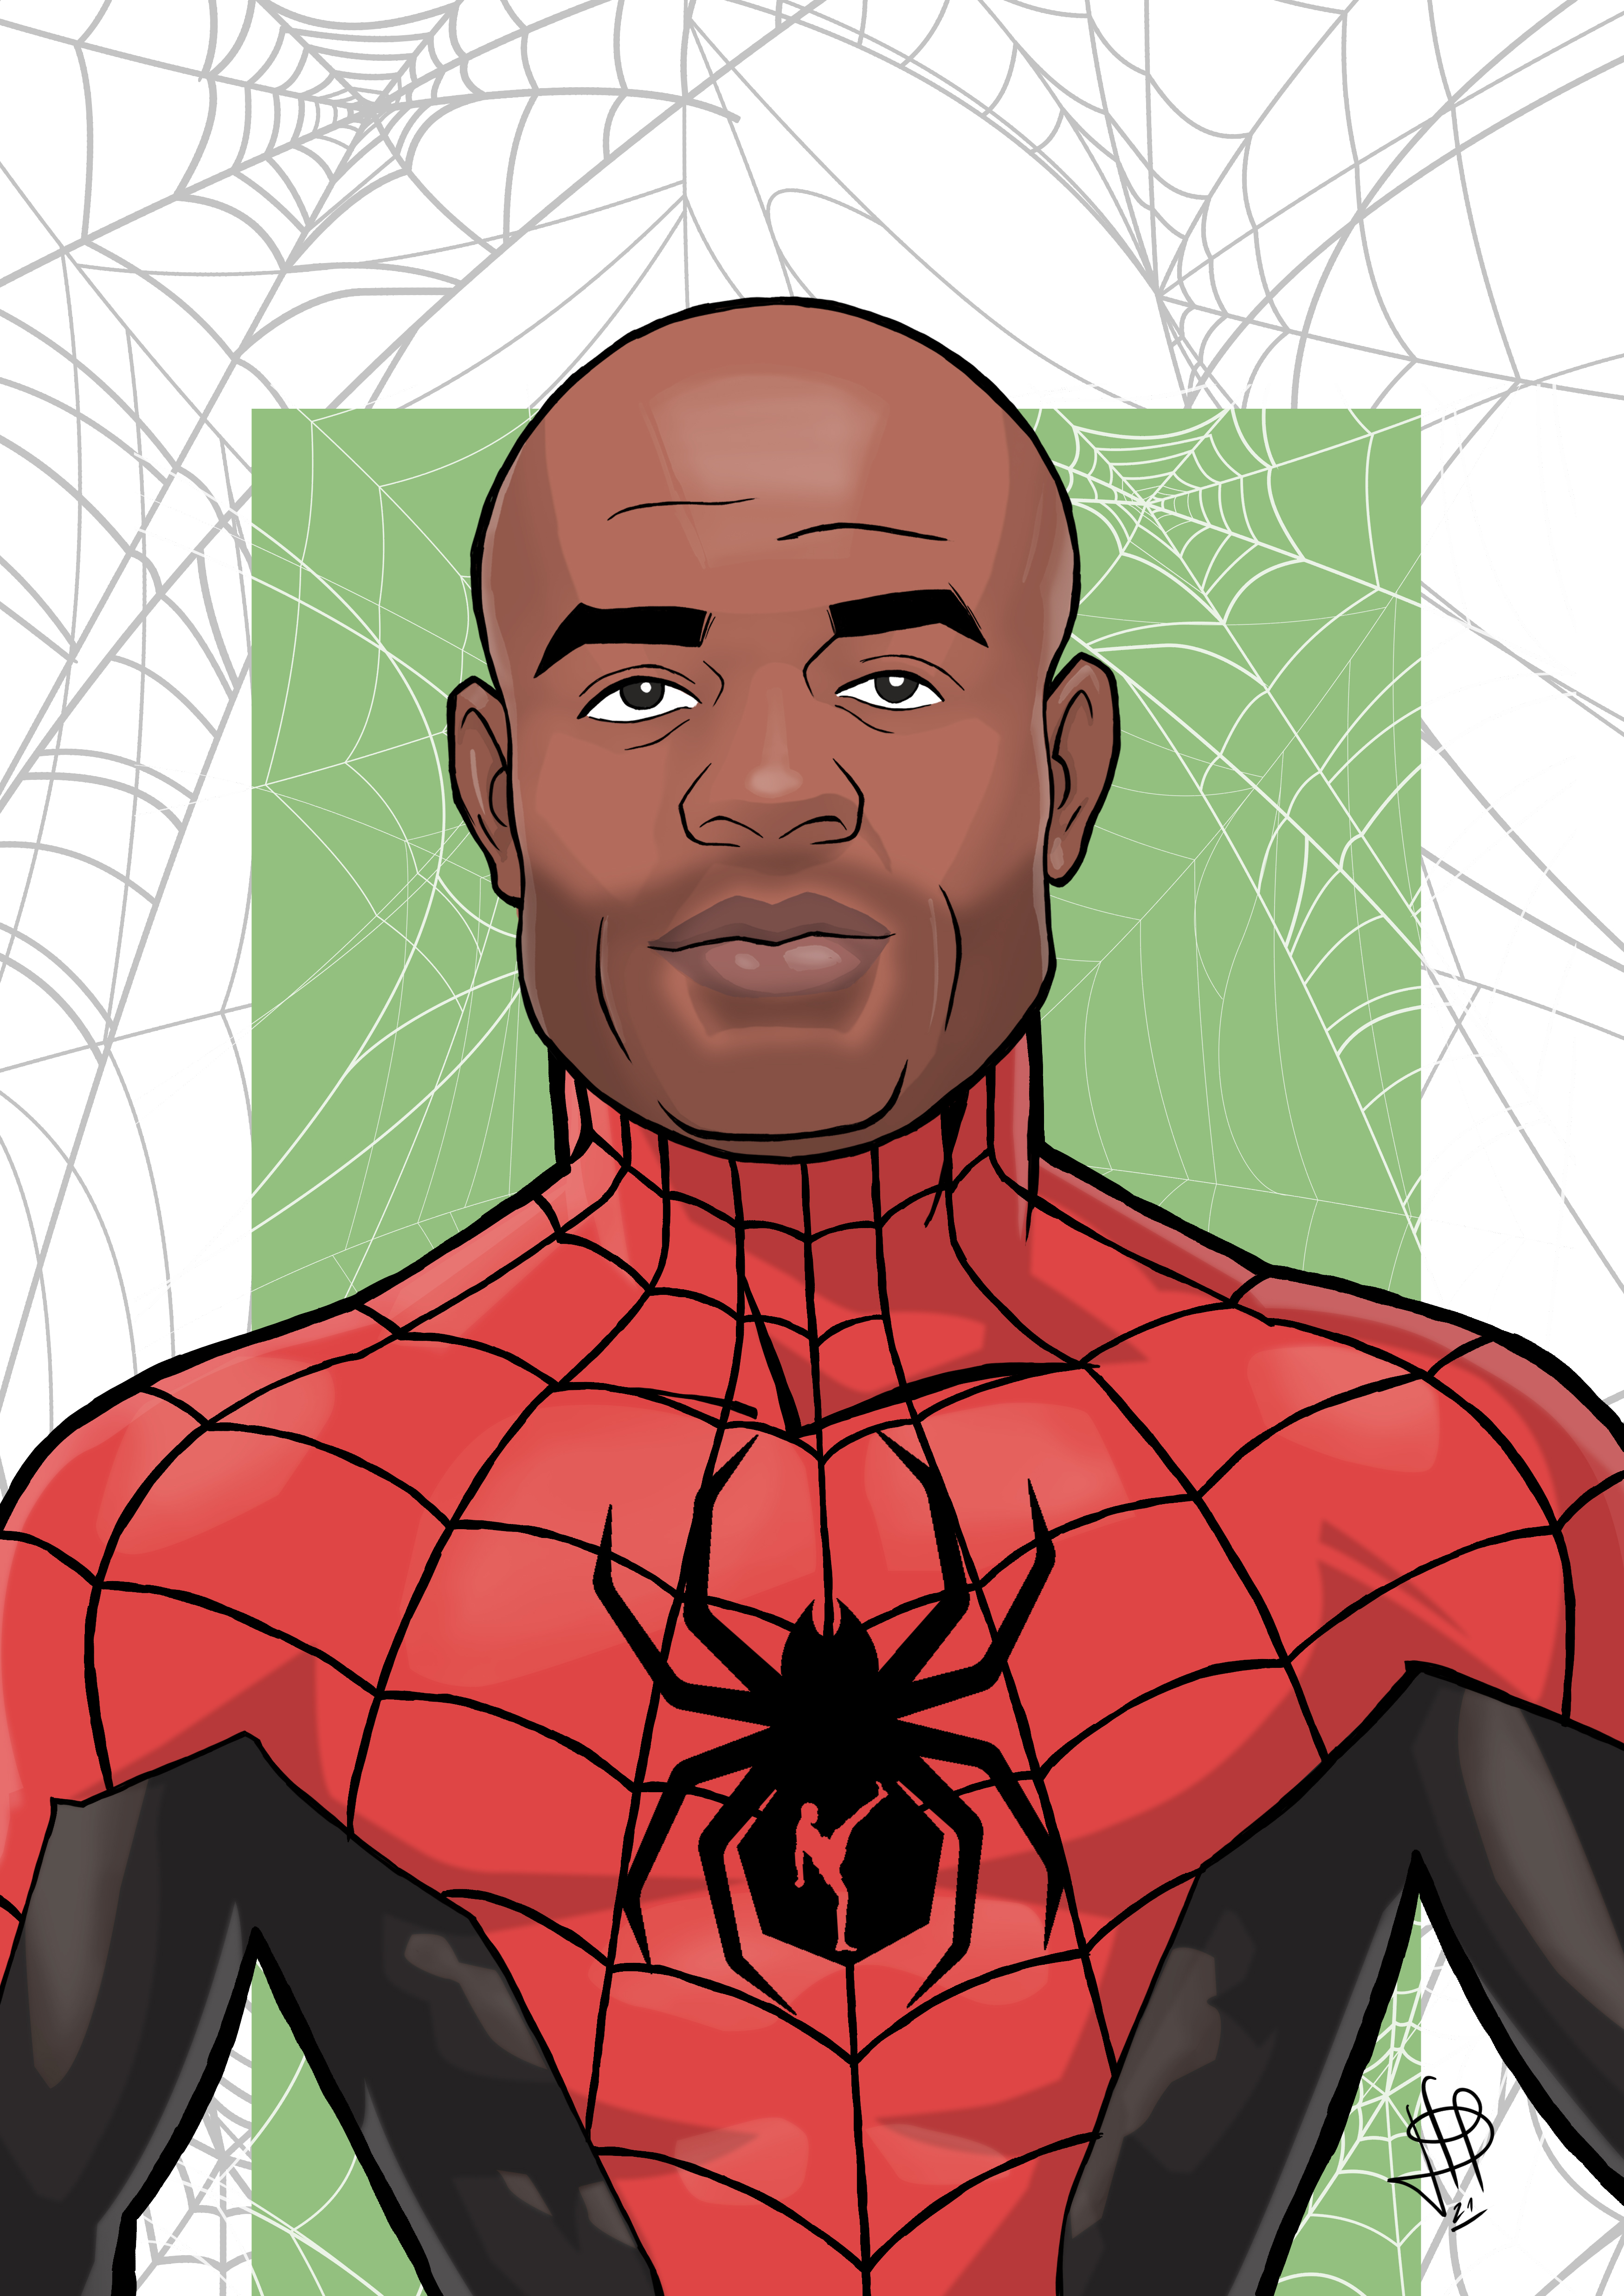 Anderson 'The Spider' Silva